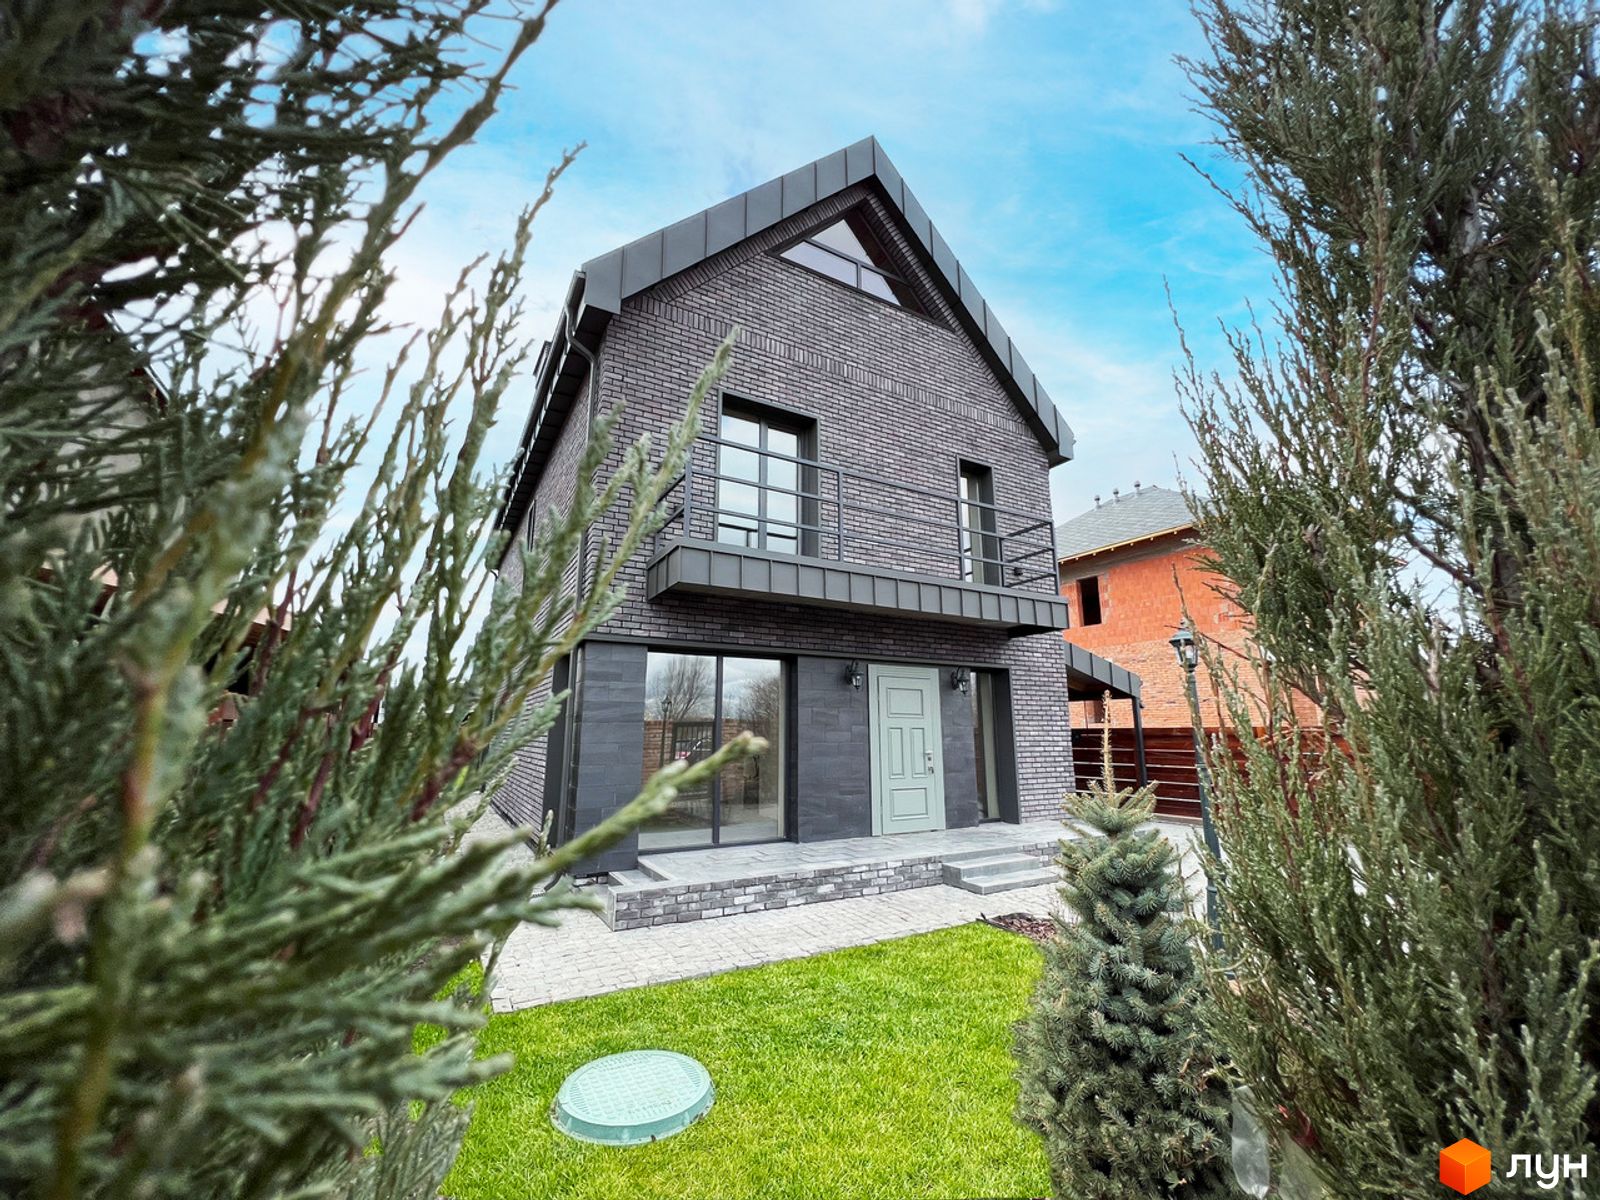 〚 Скромный снаружи, изысканный внутри дачный домик в Дании 〛 ◾ Фото ◾ Идеи ◾ Дизайн